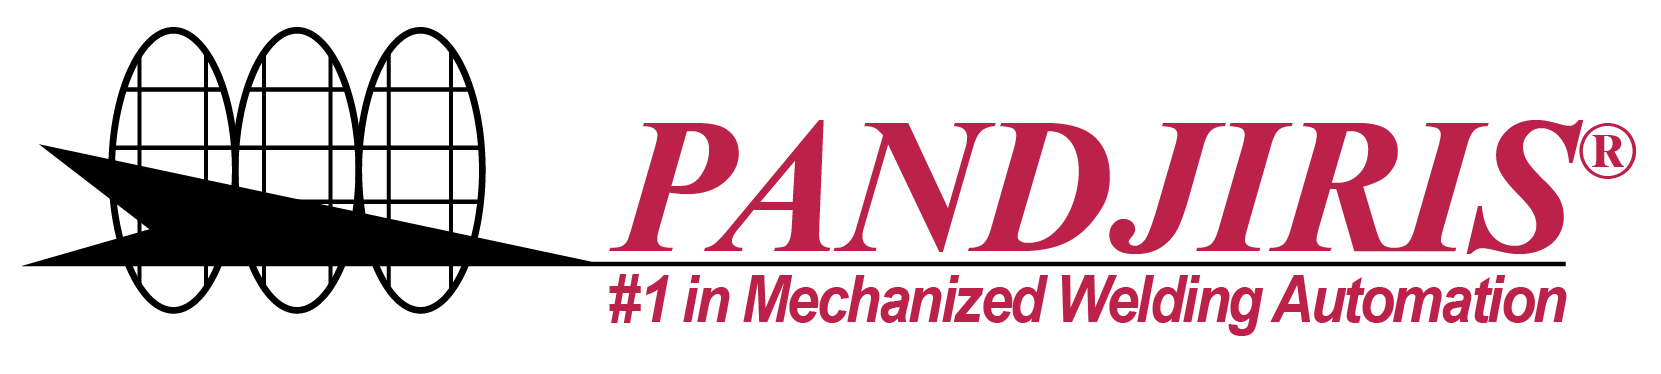 Pandjiris Inc. Logo